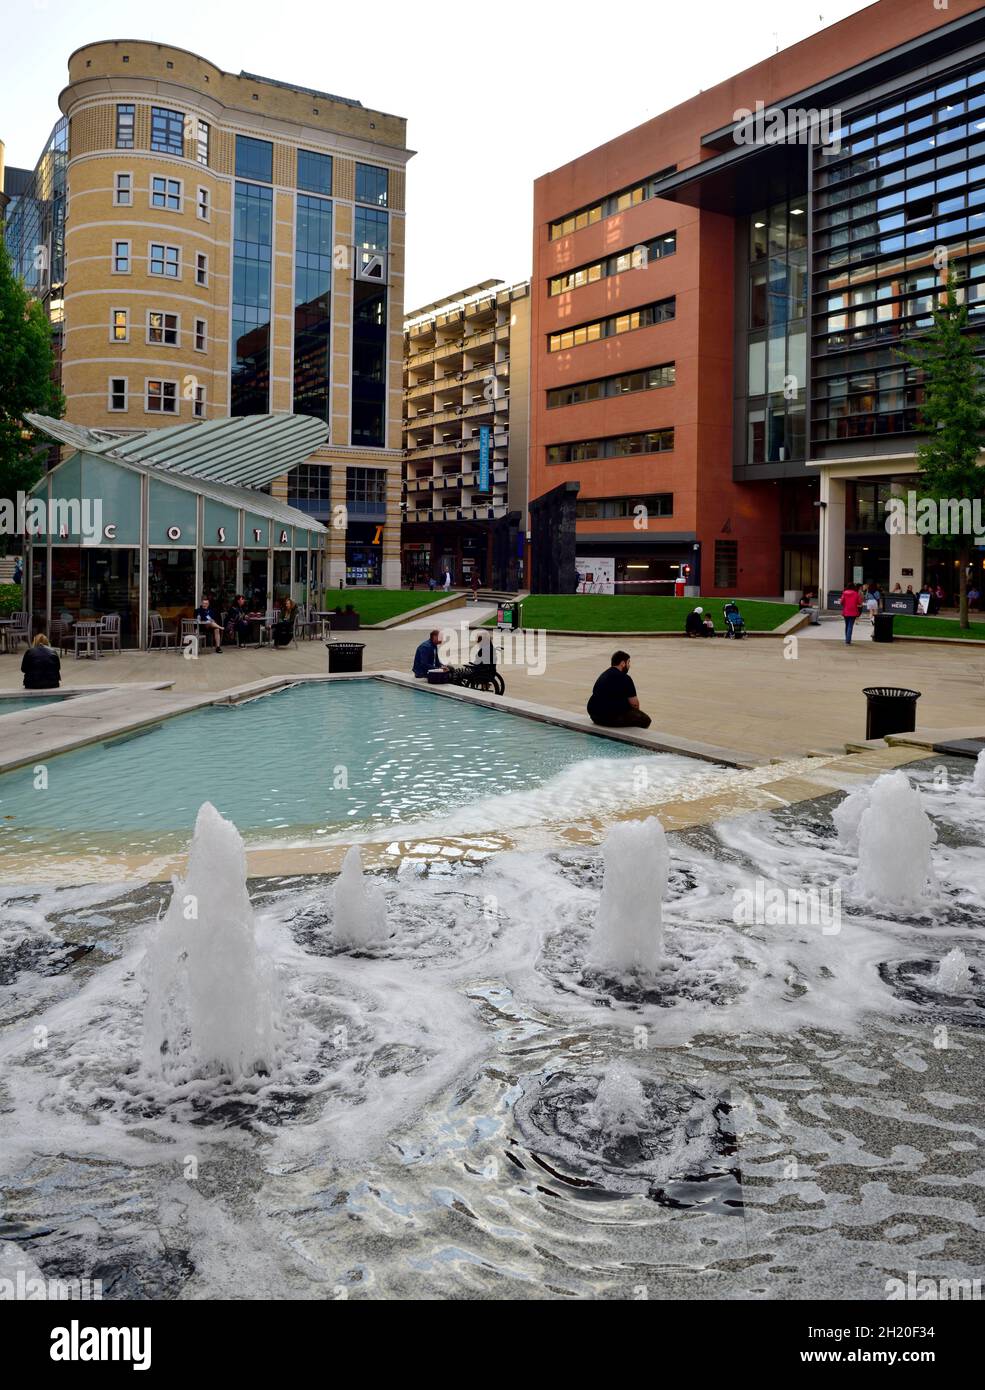 Brindley Place Fountains en parque y plaza pública, Birmingham, Reino Unido Foto de stock